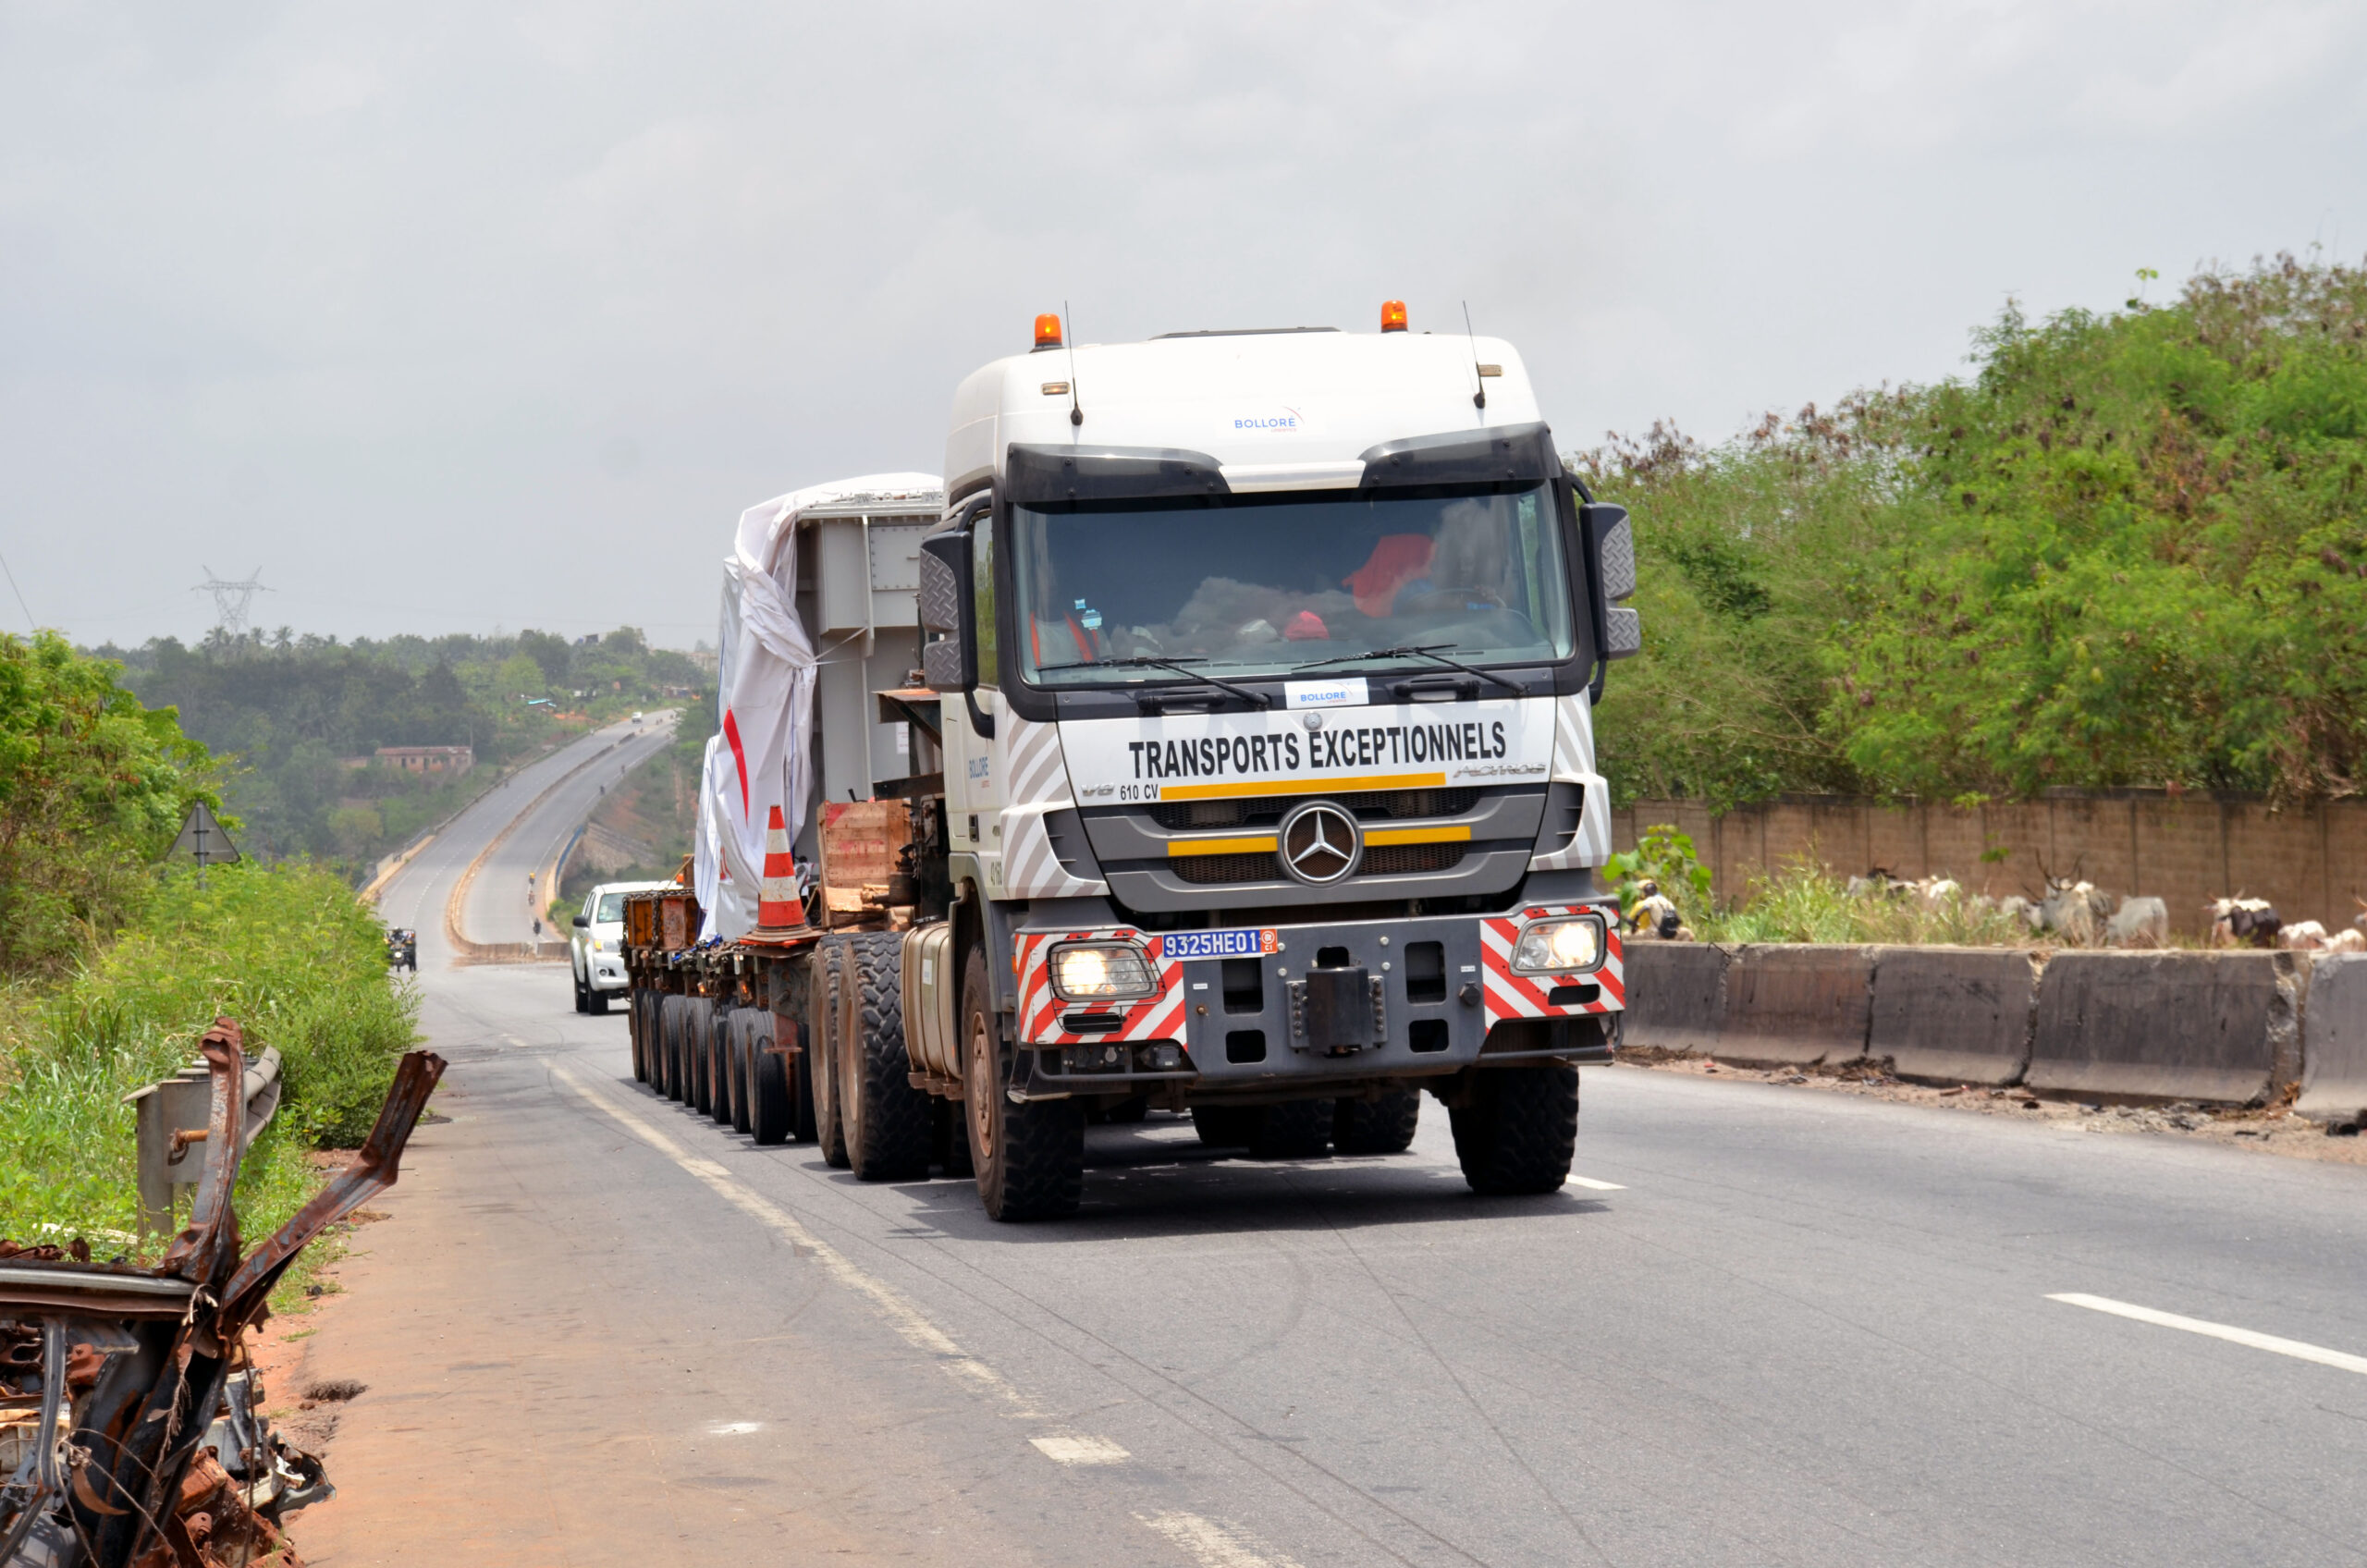 Camions de transport exceptionnel sur la route en Afrique